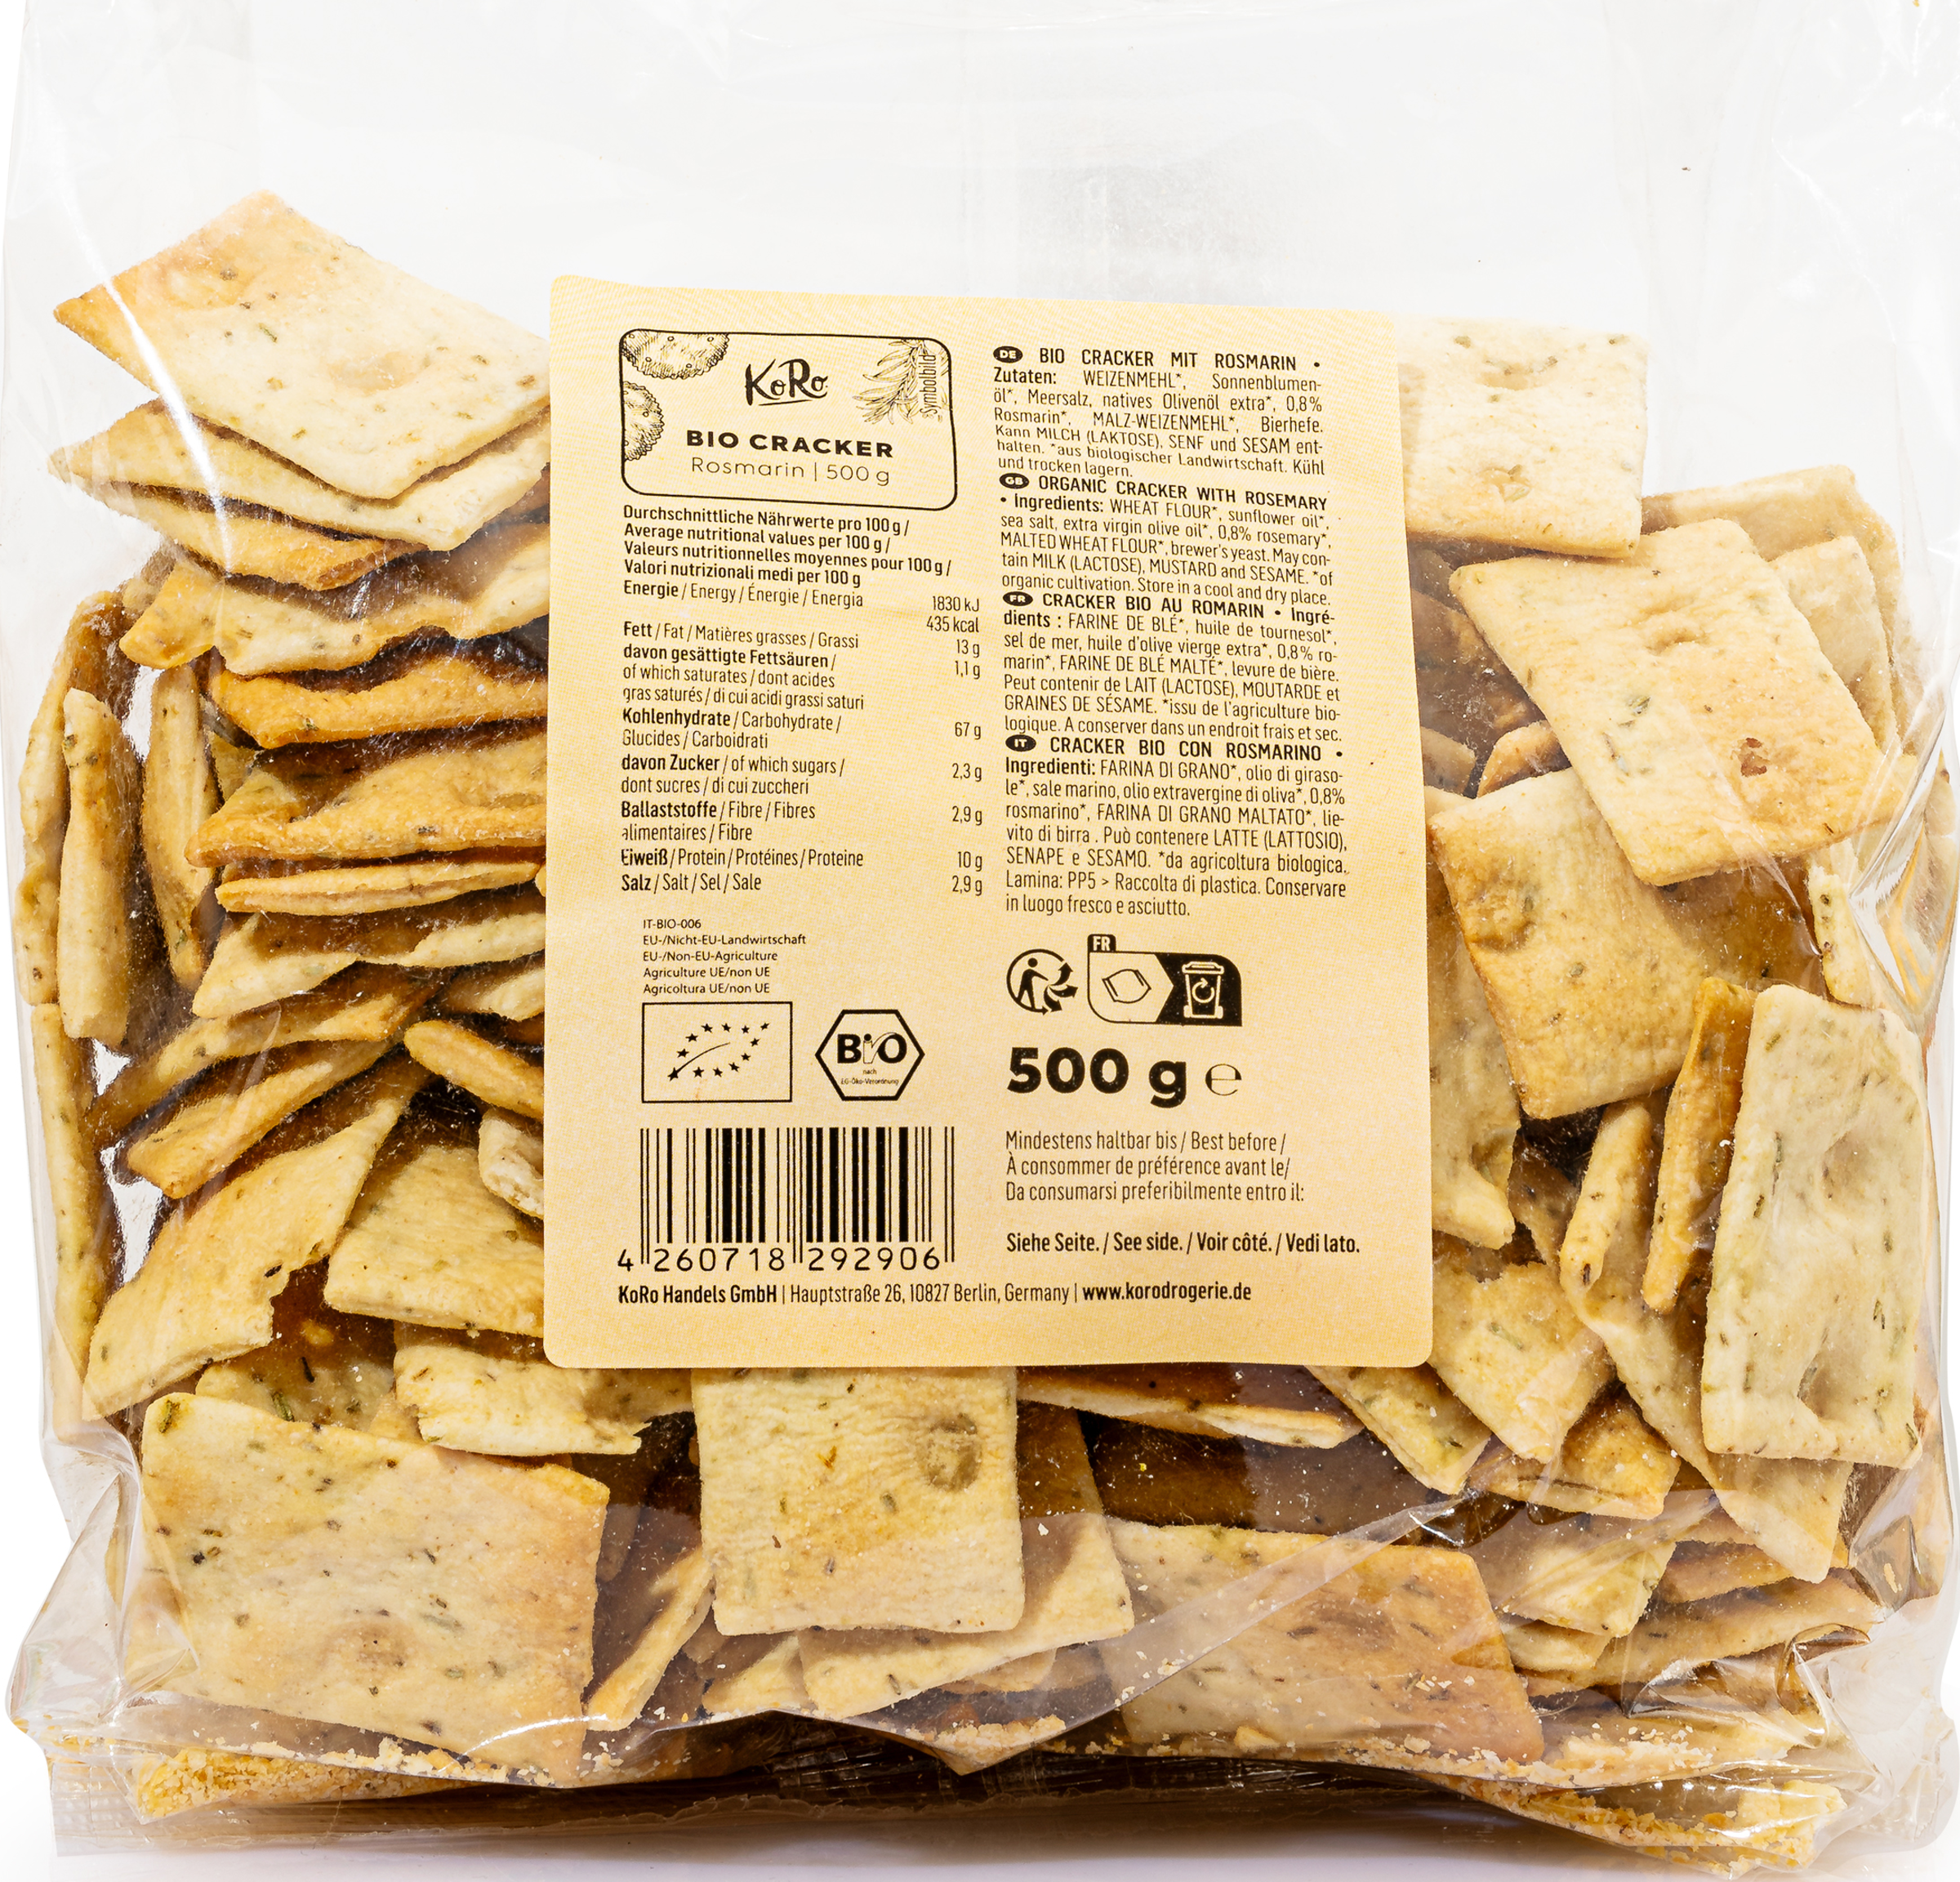 KoRo Organic rosemary crackers